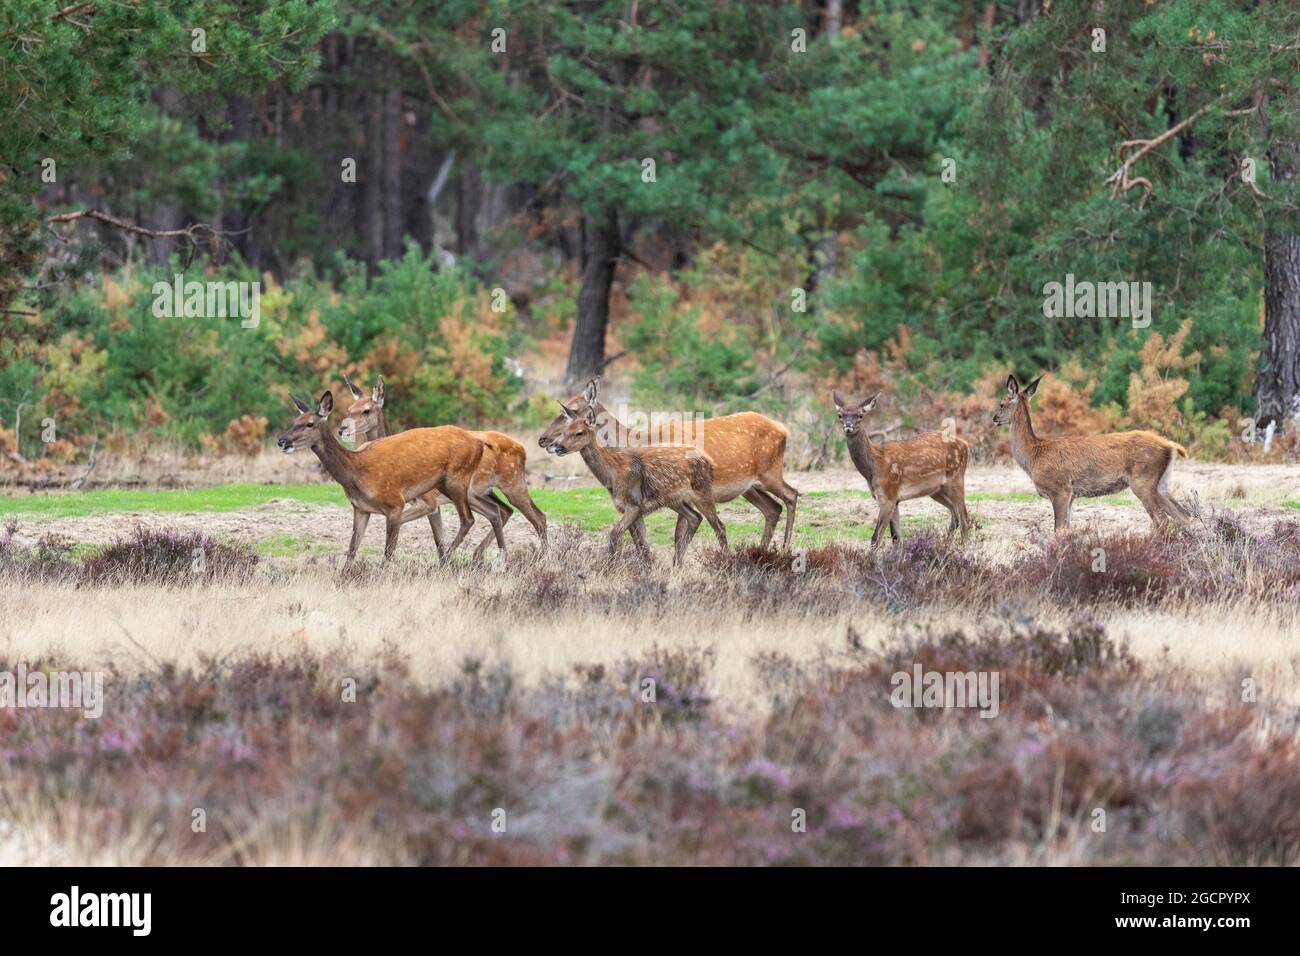 Red deer, Bald deer (Cervus elephus L.), NP Hoge Veluwe, Netherlands Stock Photo